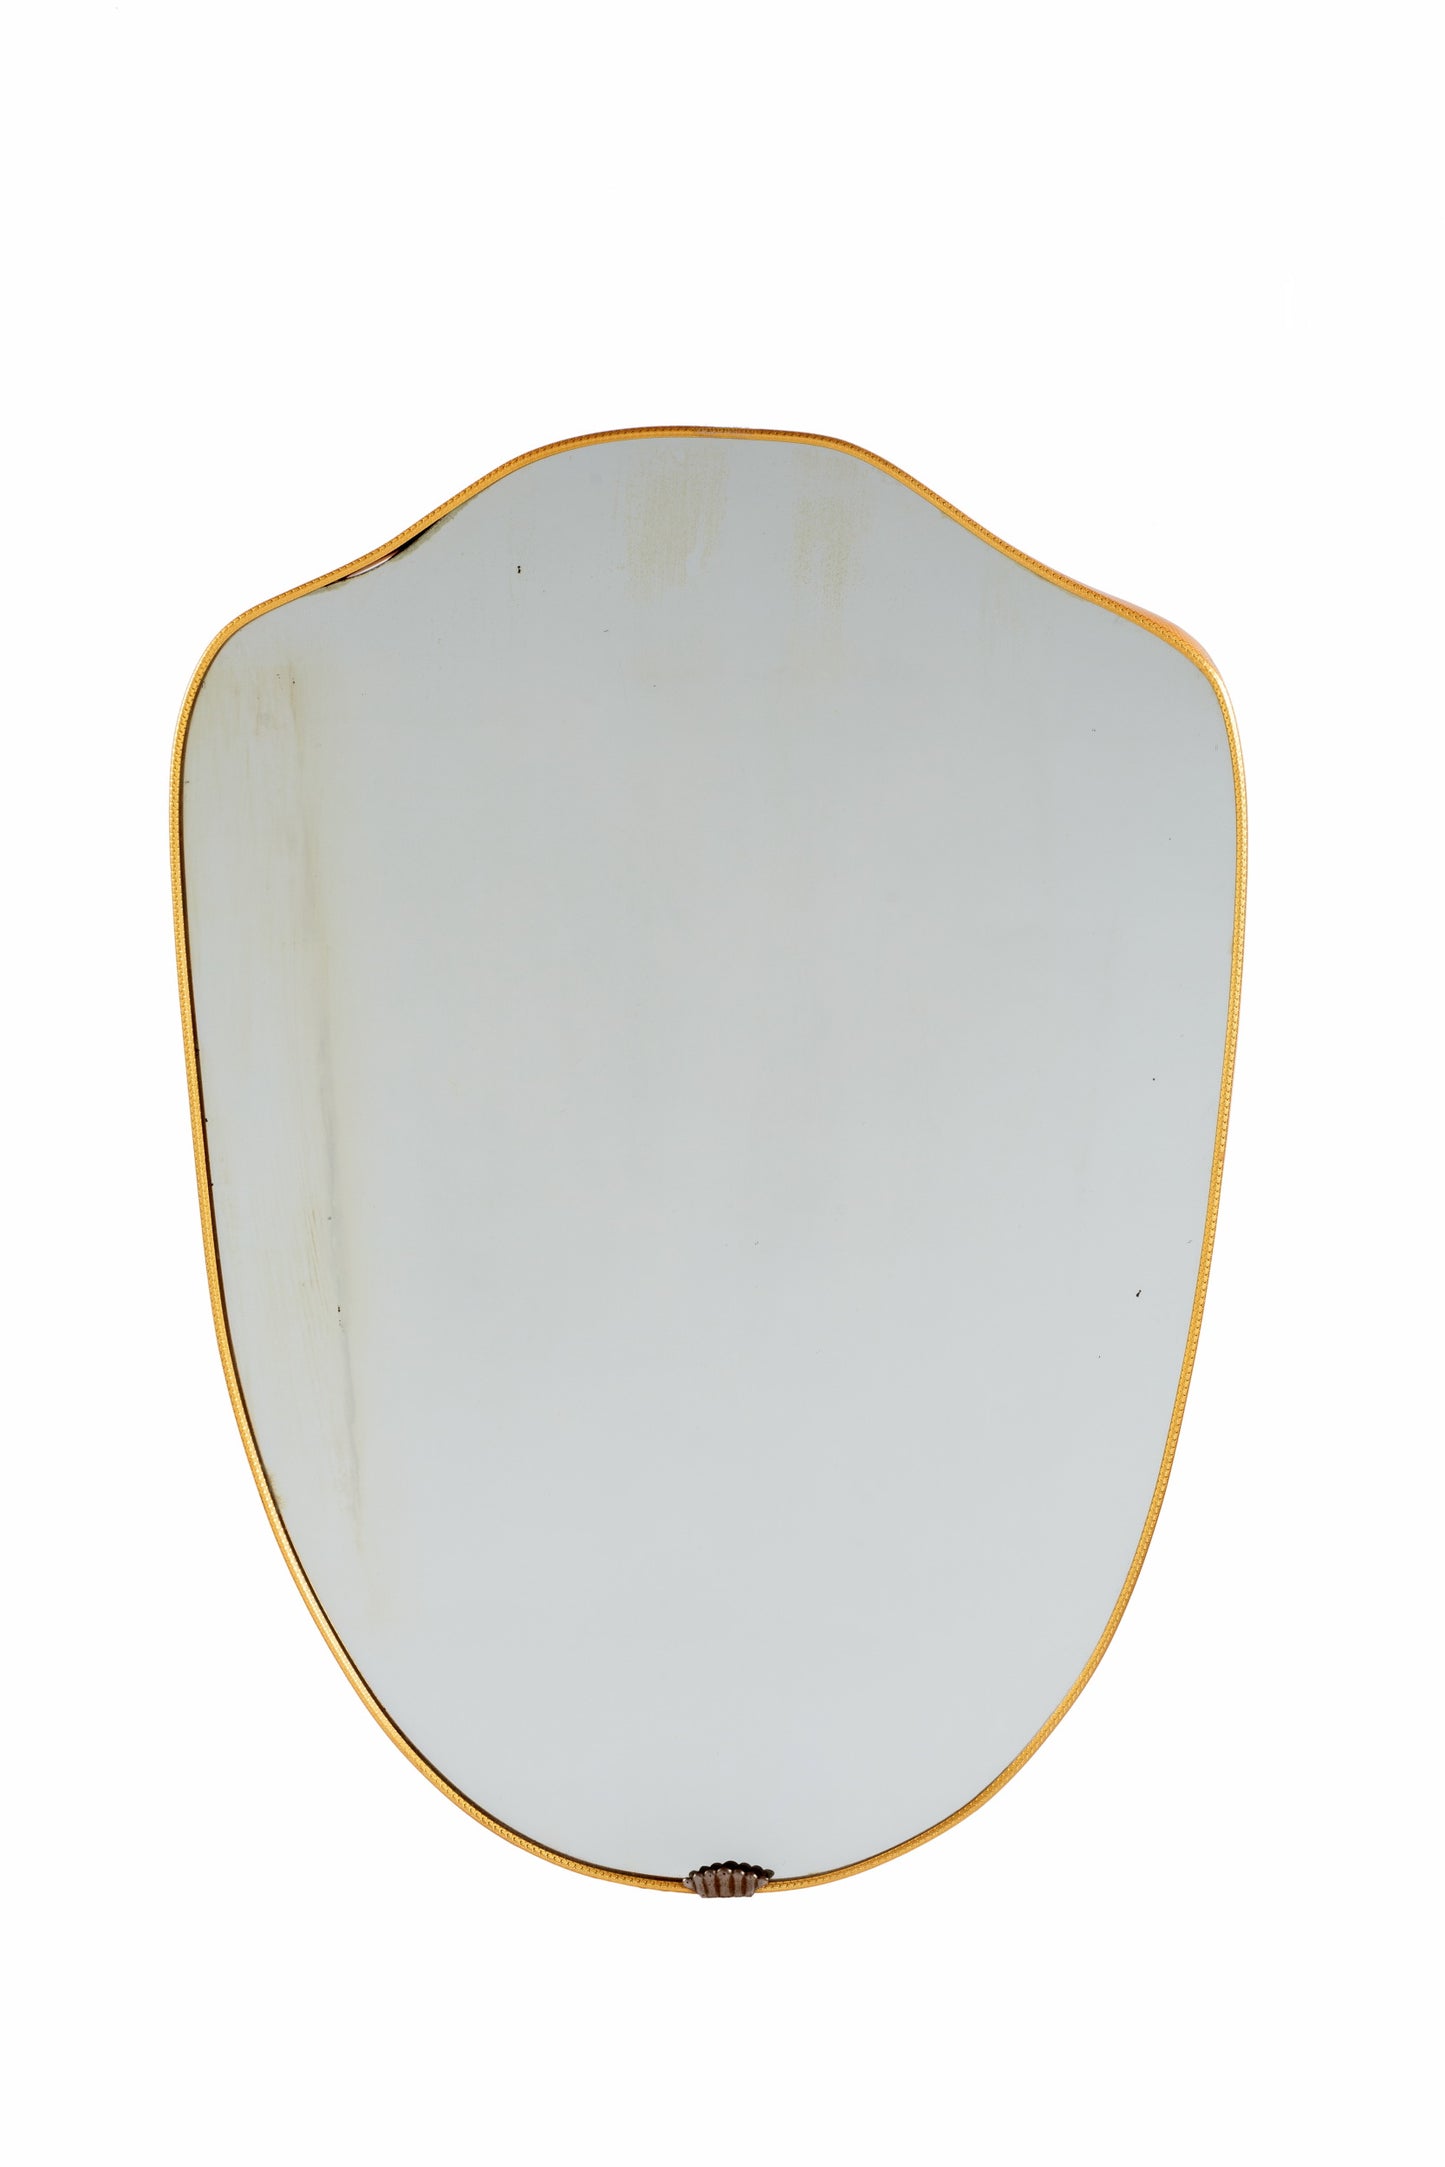 1960s shield mirror